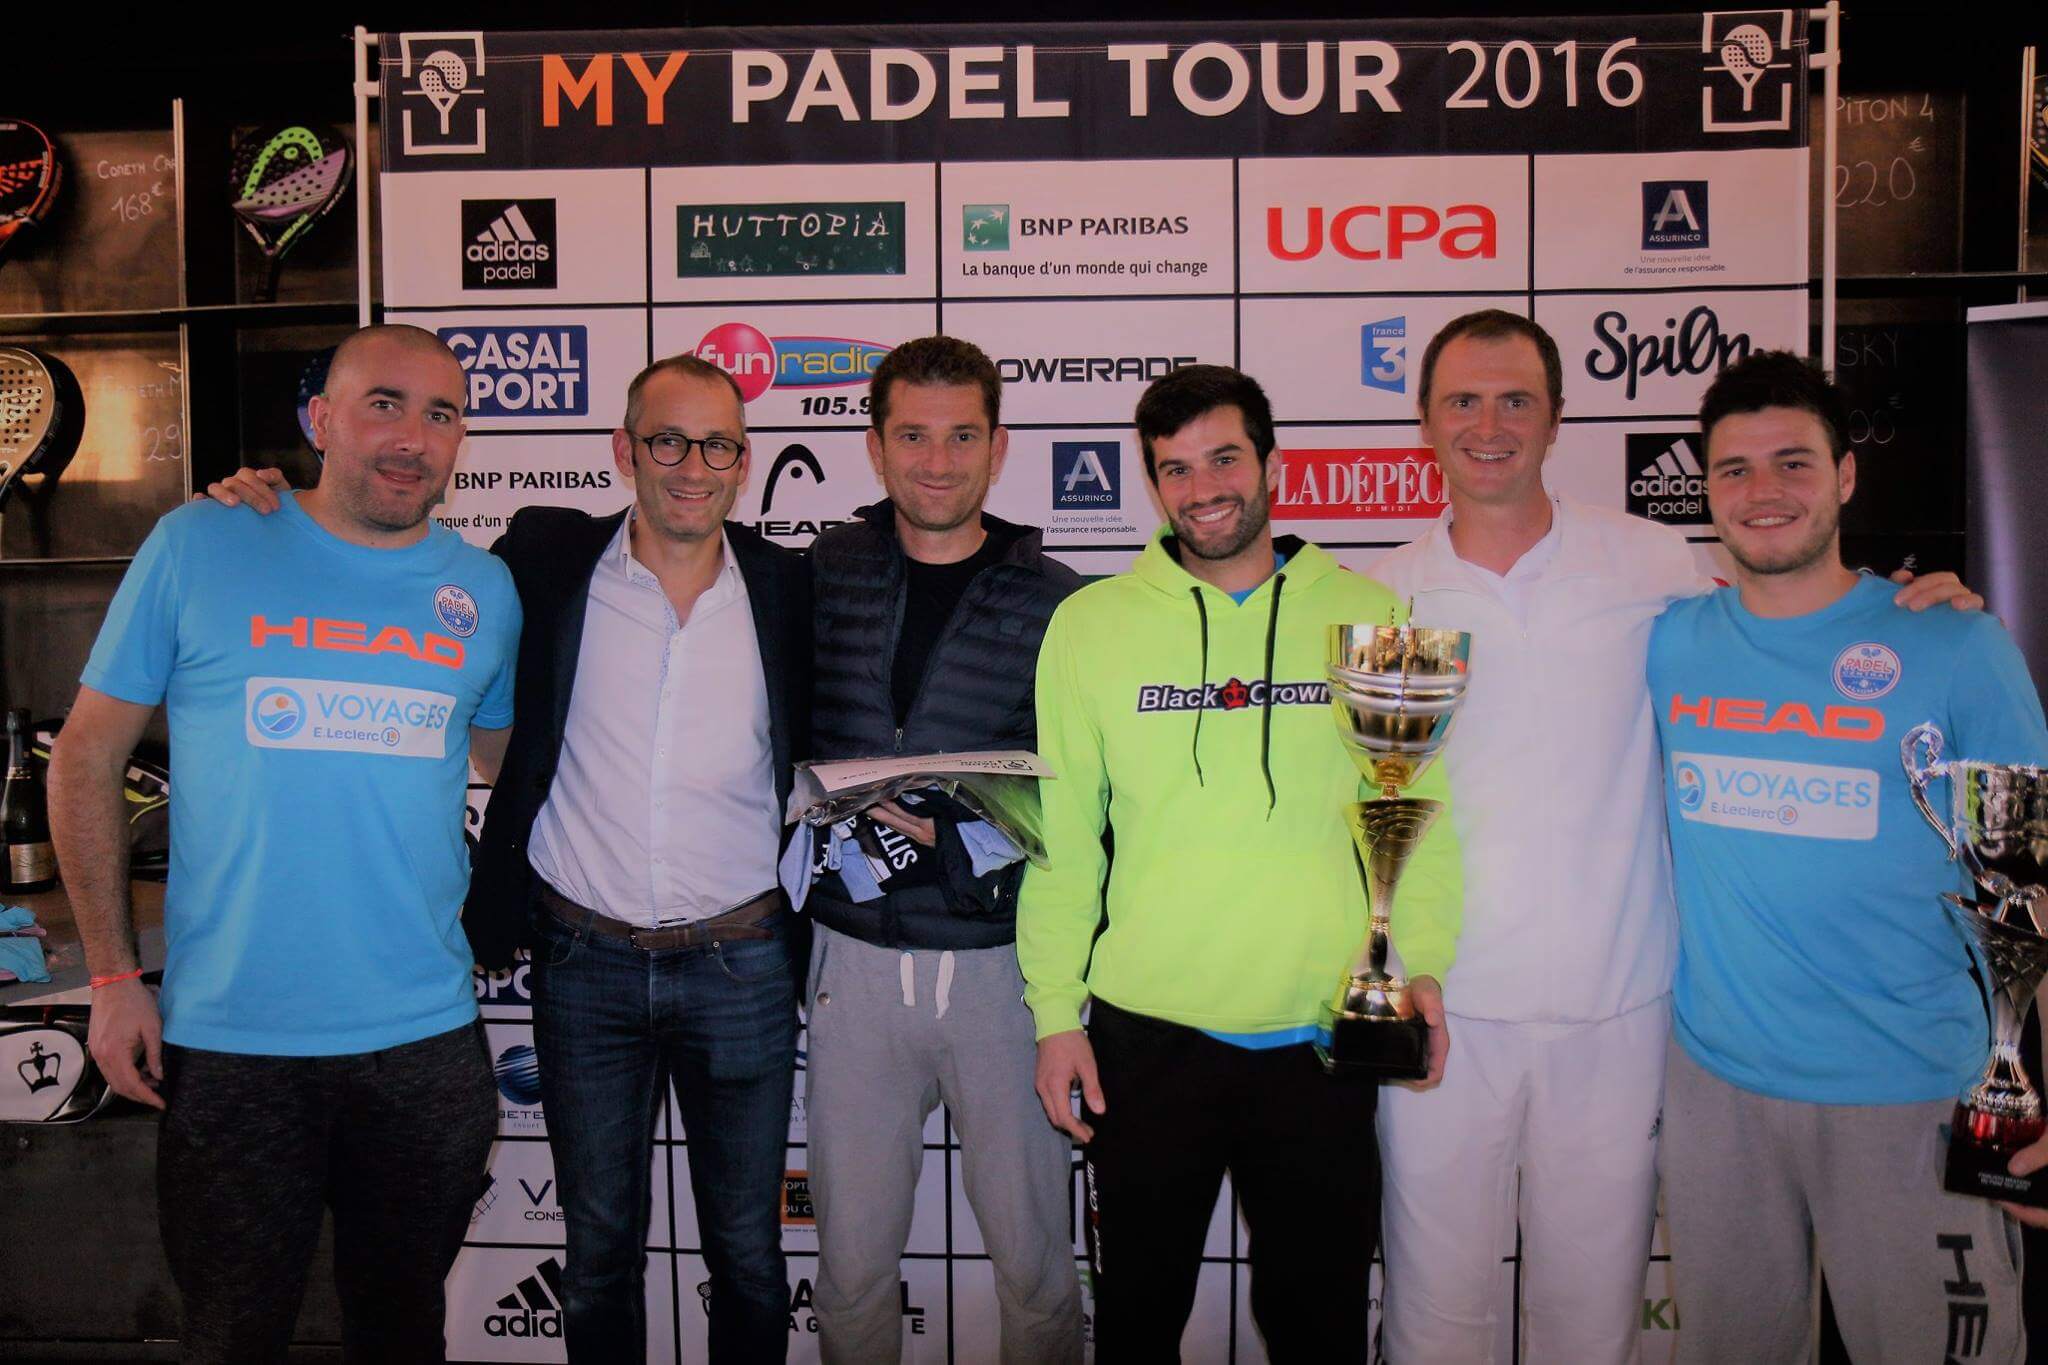 Ferrandez / Gauthier och Vandaele / Godallier vinner på My Padel 2016 Tour